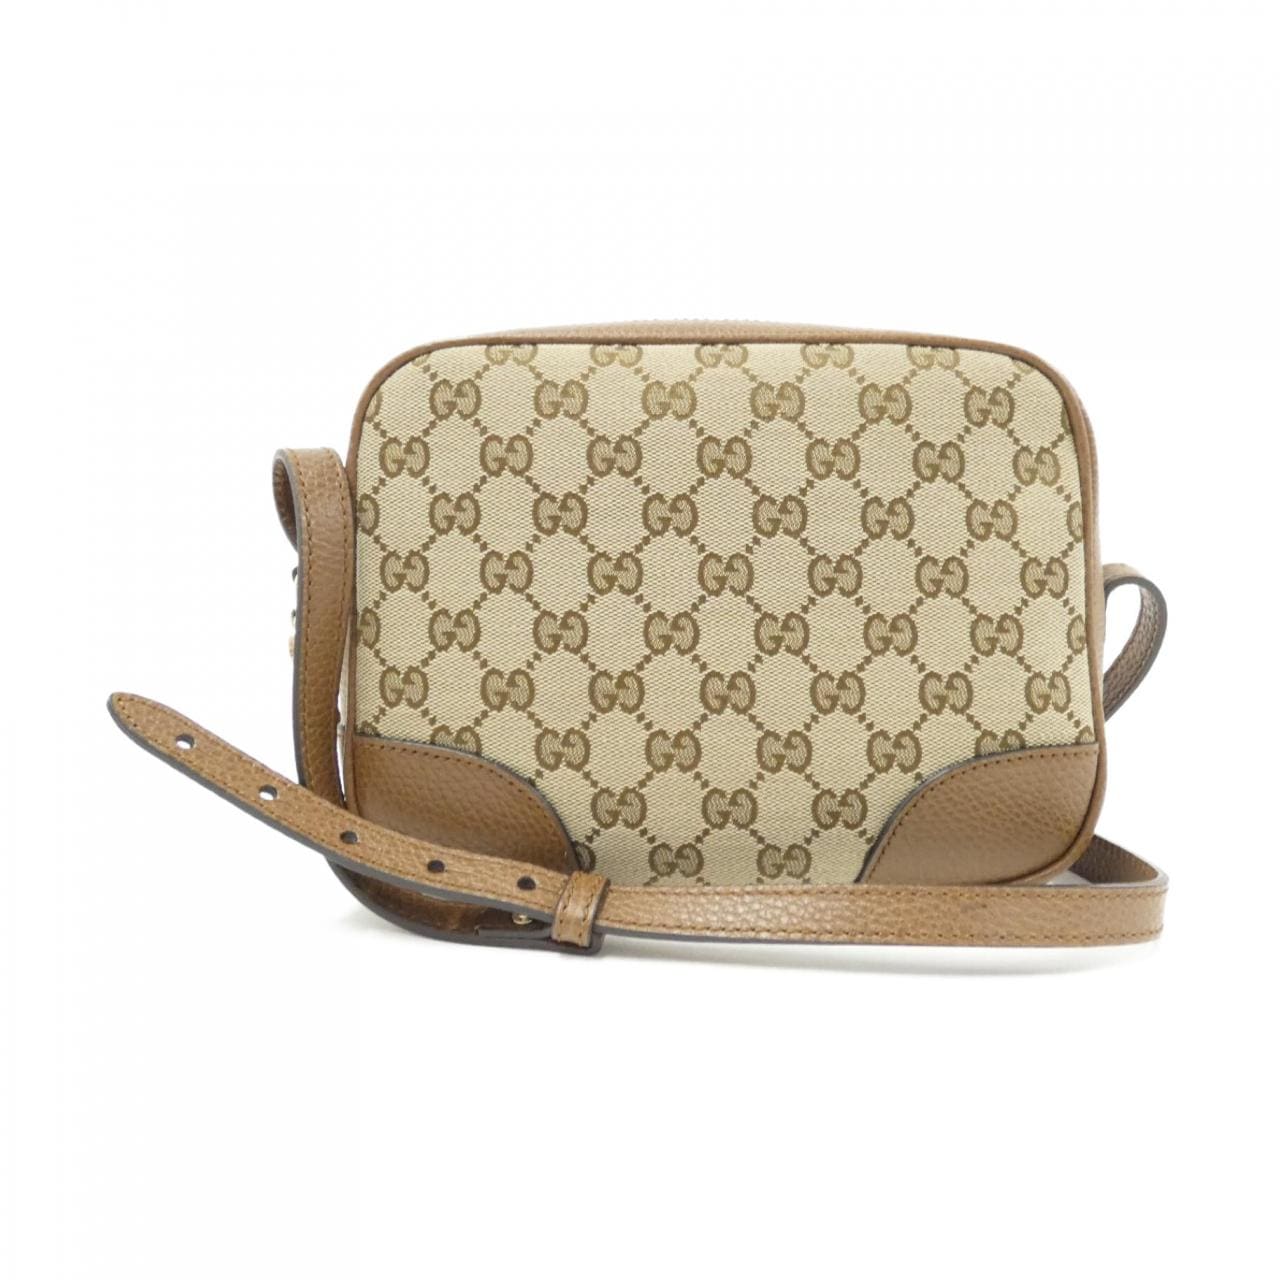 [BRAND NEW] Gucci 449413 KY9LG Shoulder Bag